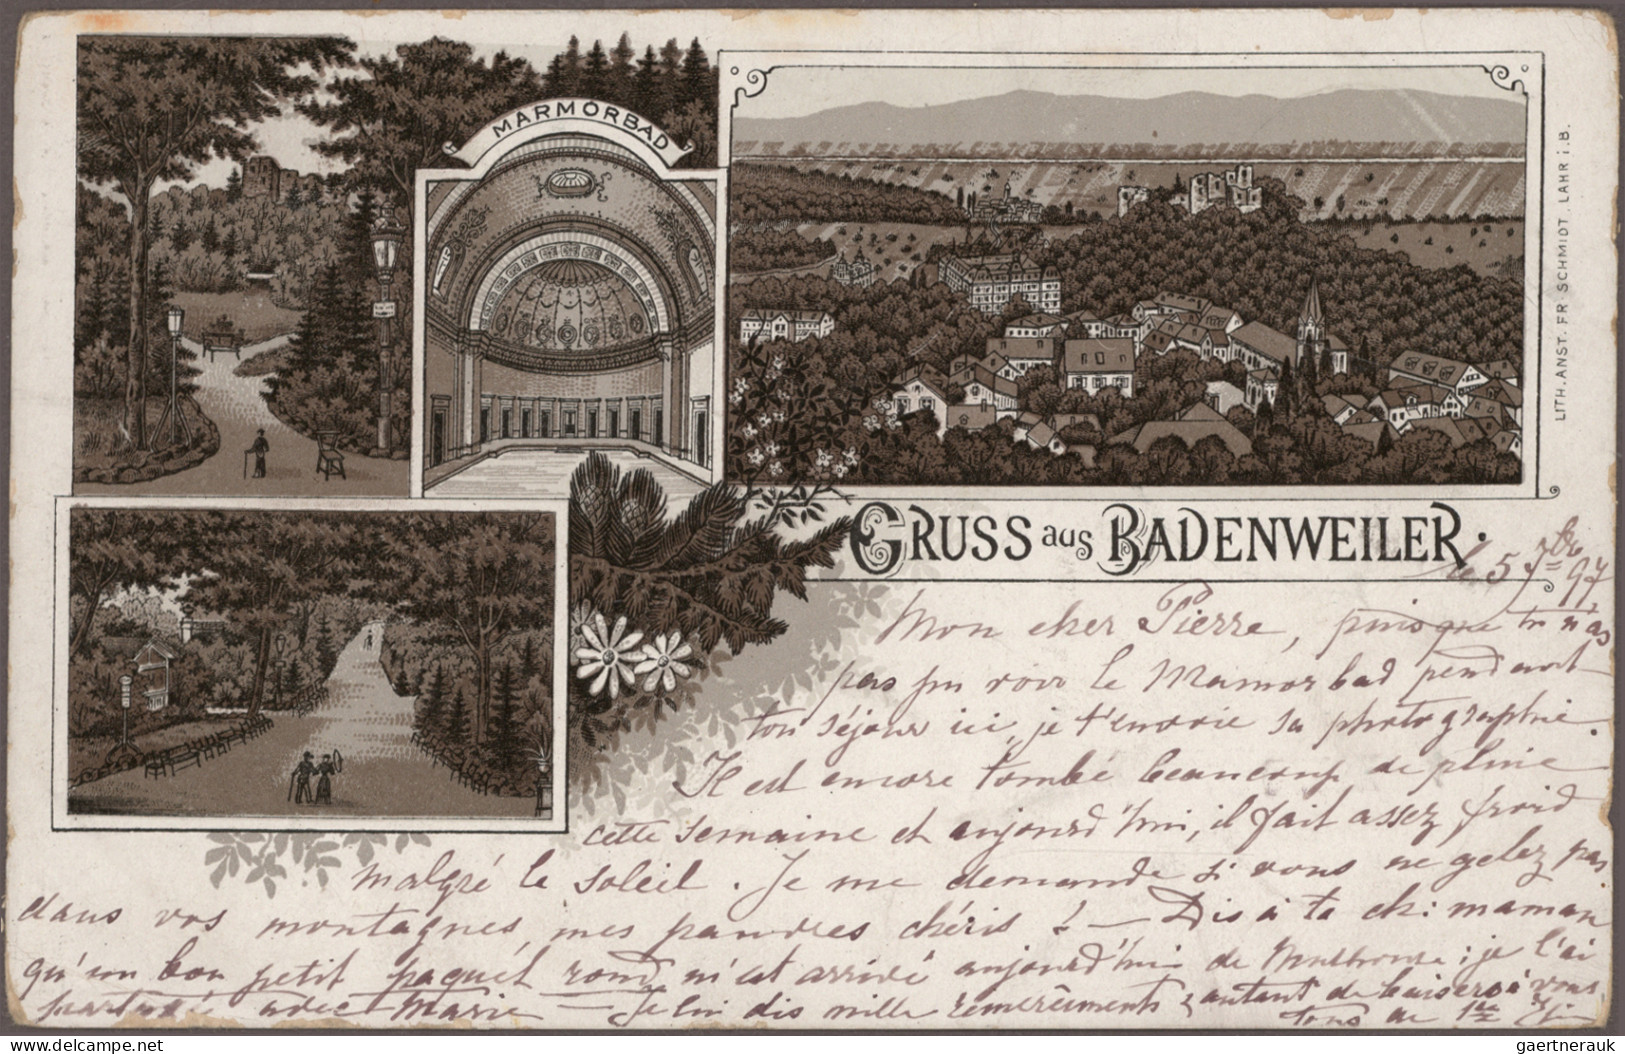 Ansichtskarten: Baden-Württemberg: BADEN-WÜRTTEMBERG, fantastischer Posten von c